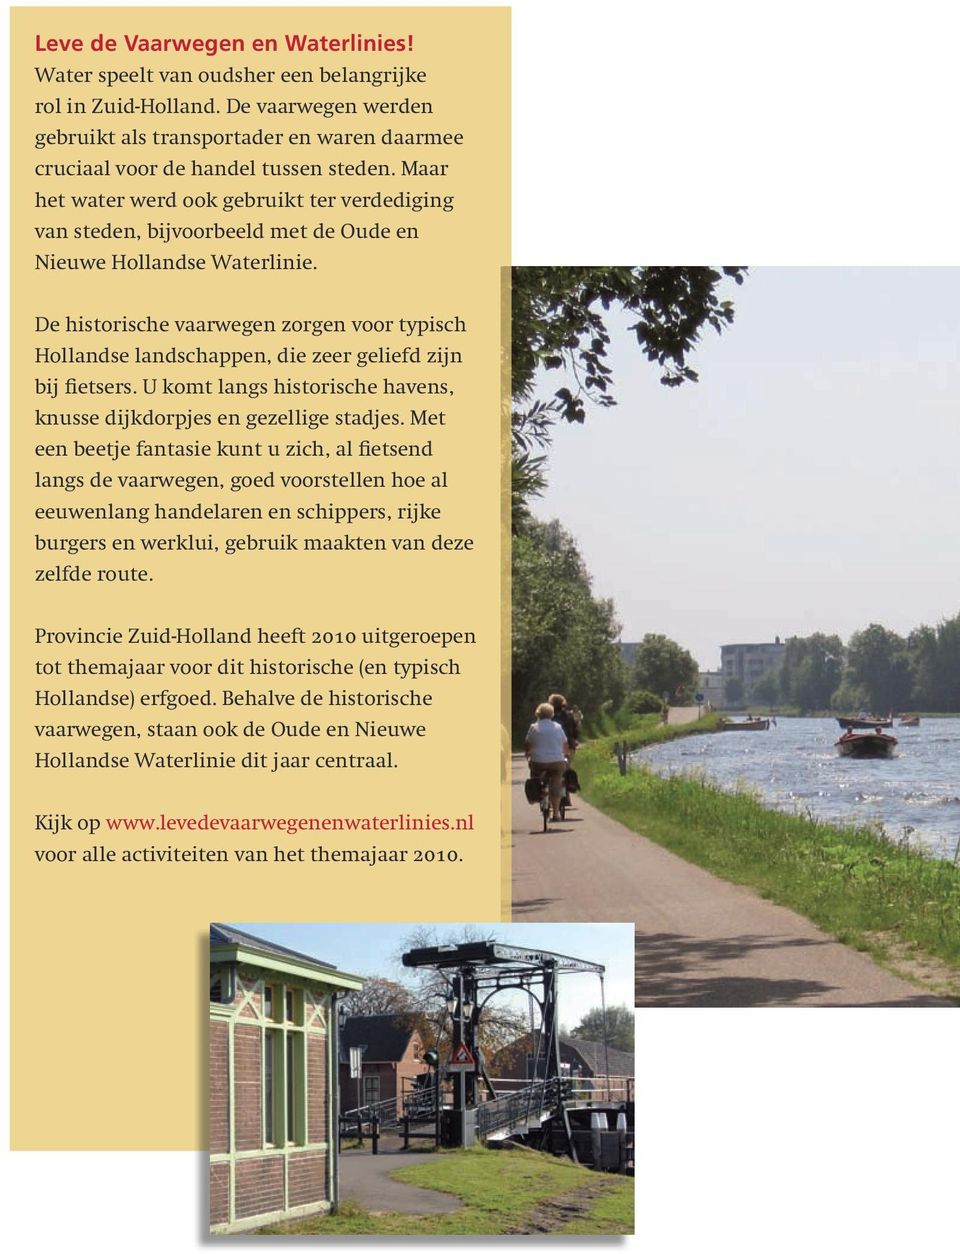 De historische vaarwegen zorgen voor typisch Hollandse landschappen, die zeer geliefd zijn bij fietsers. U komt langs historische havens, knusse dijk dorpjes en gezellige stadjes.